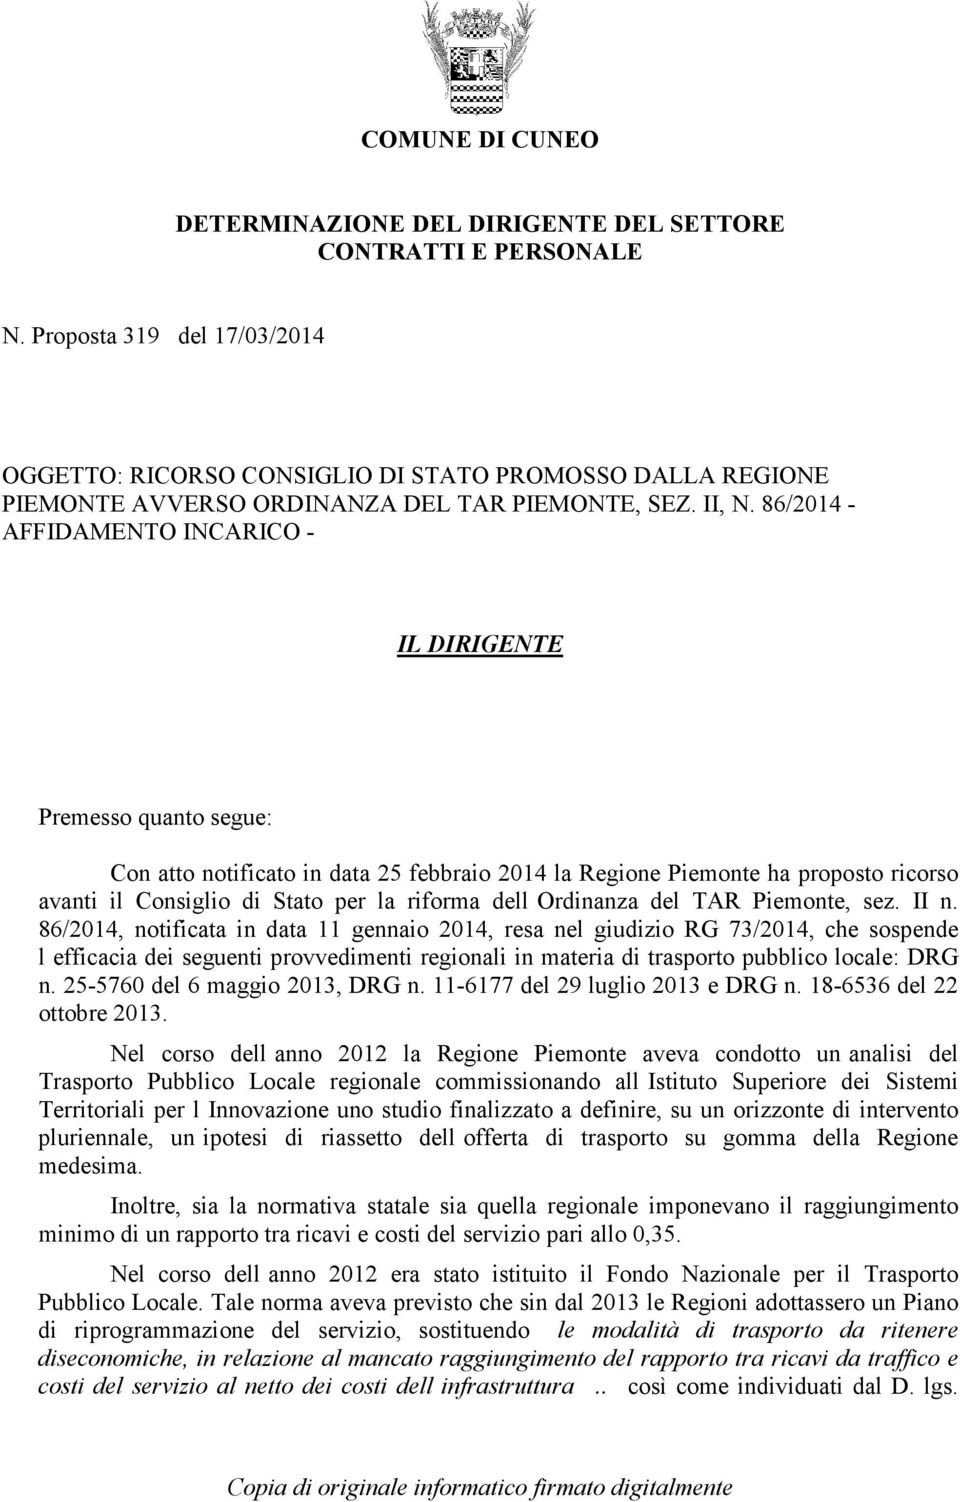 86/2014 - AFFIDAMENTO INCARICO - IL DIRIGENTE Premesso quanto segue: Con atto notificato in data 25 febbraio 2014 la Regione Piemonte ha proposto ricorso avanti il Consiglio di Stato per la riforma